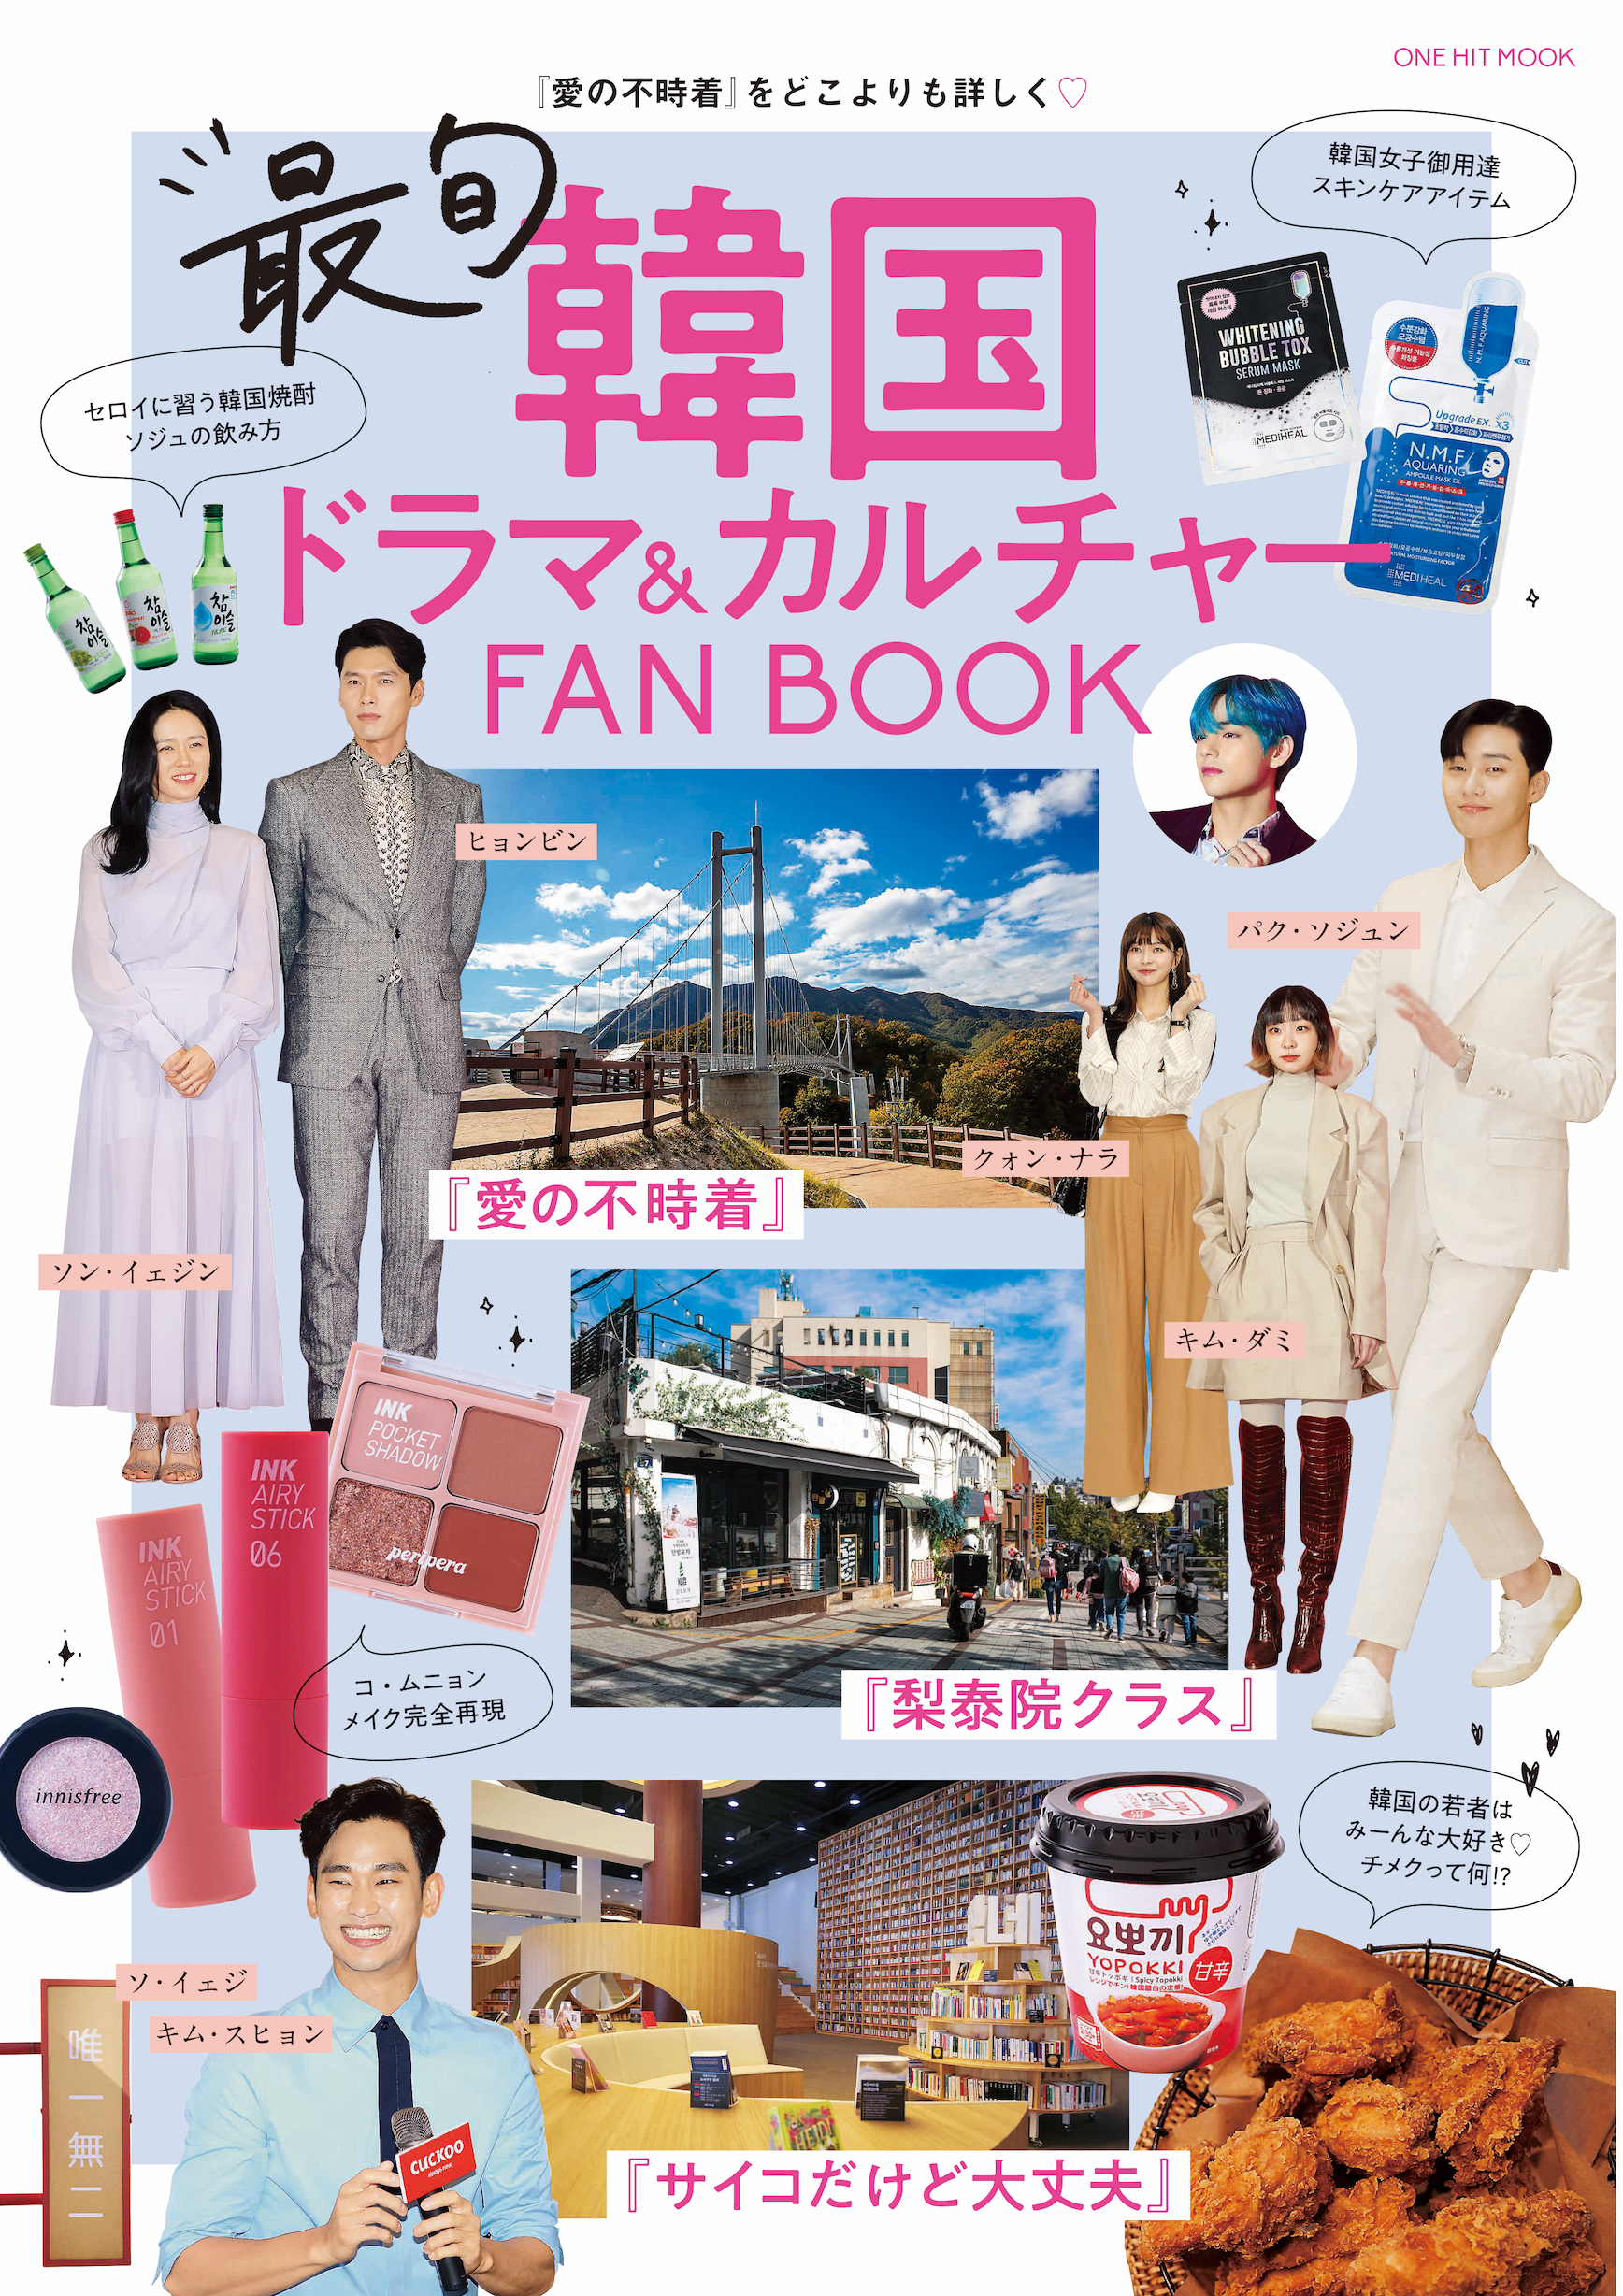 最旬韓国ドラマ カルチャーfanbook が好評発売中 Bts Vも楽曲提供した 梨泰院クラス の神曲秘話をfanbookから大公開 株式会社ワン パブリッシングのプレスリリース